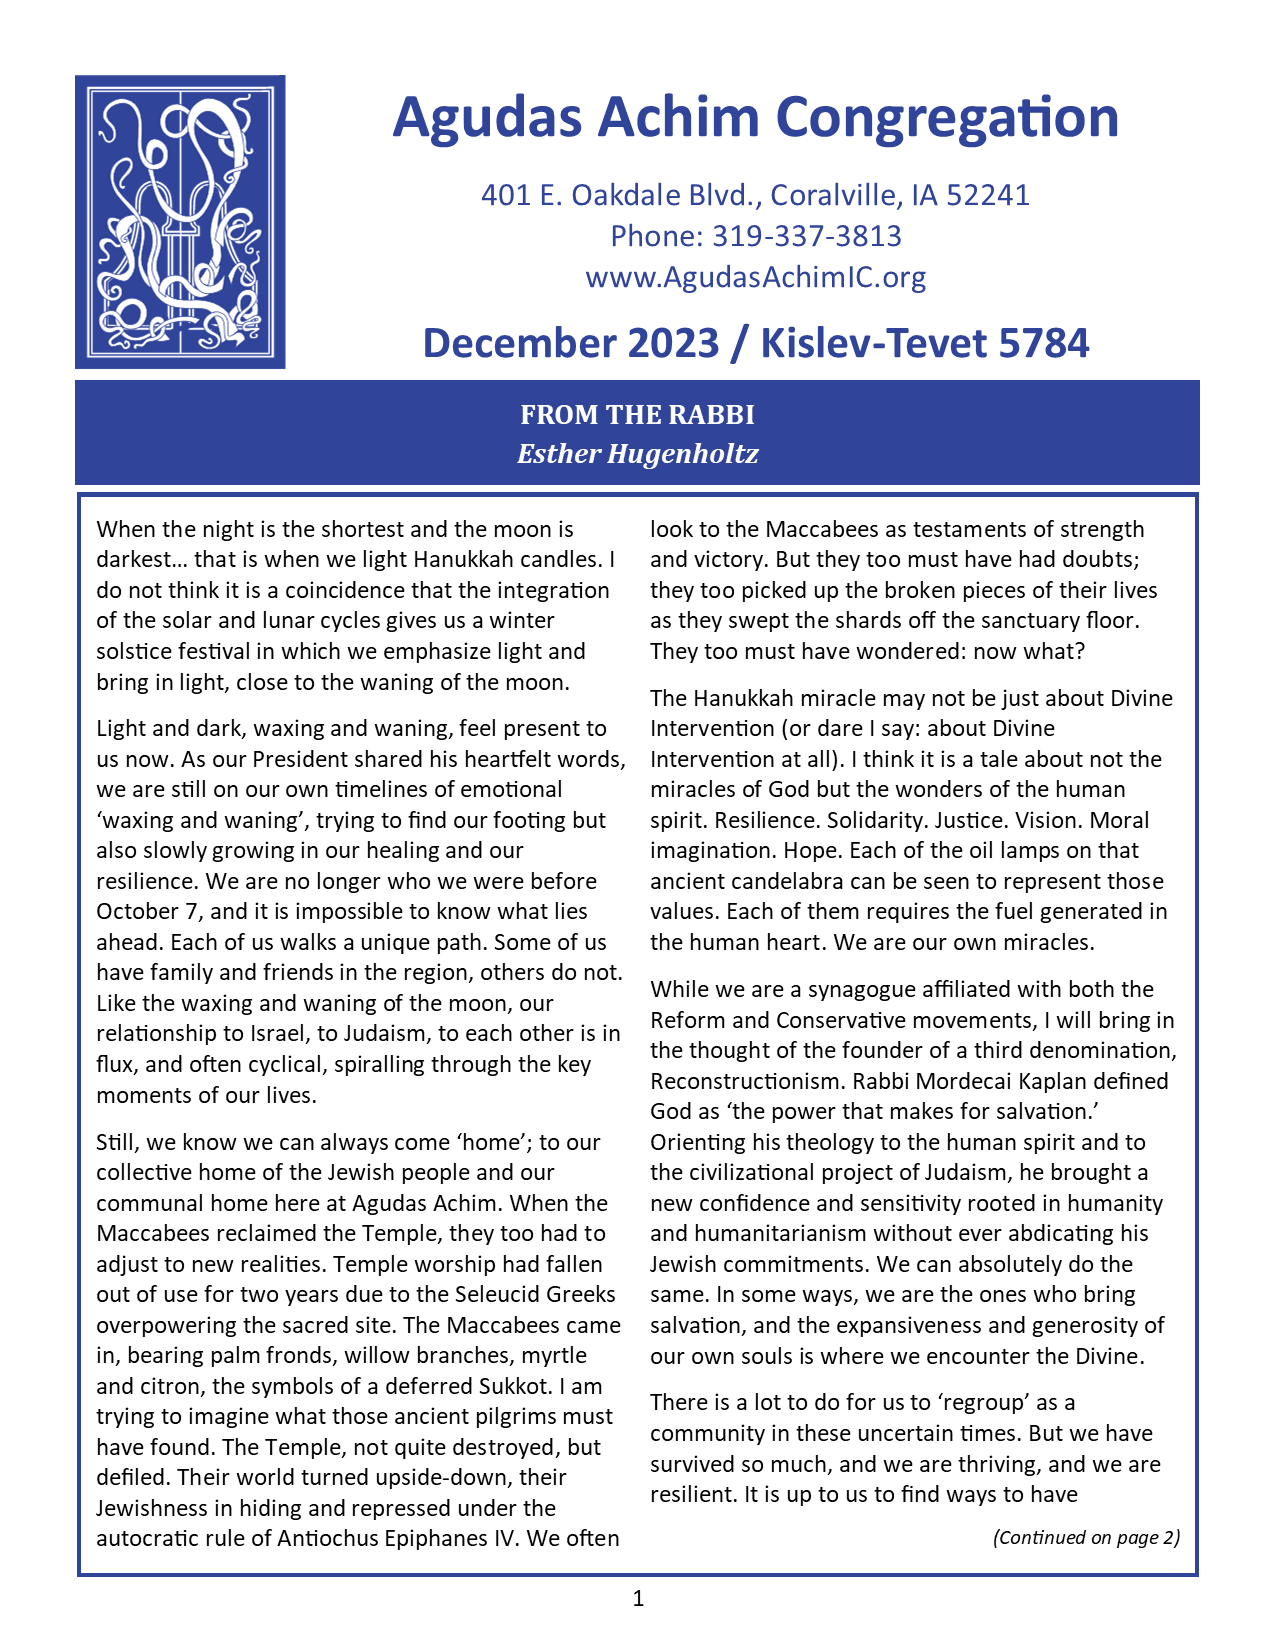 December  2023 Bulletin